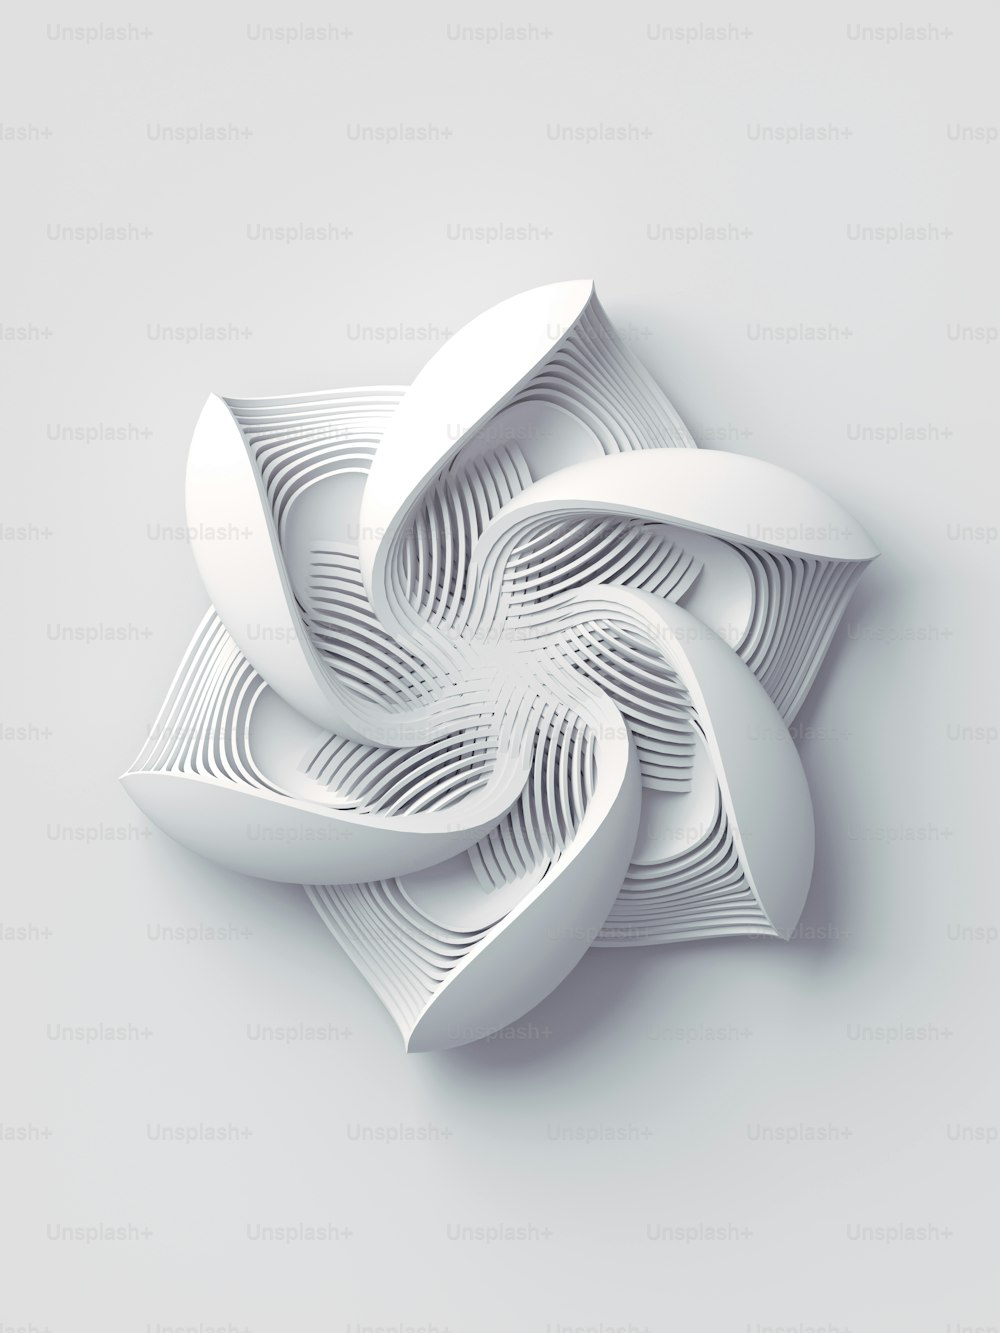 Fond d’art abstrait de rendu 3d de fleur stylisée géométrique blanche. Élément de design tendance. Concept de mode minimaliste moderne. Illustration numérique